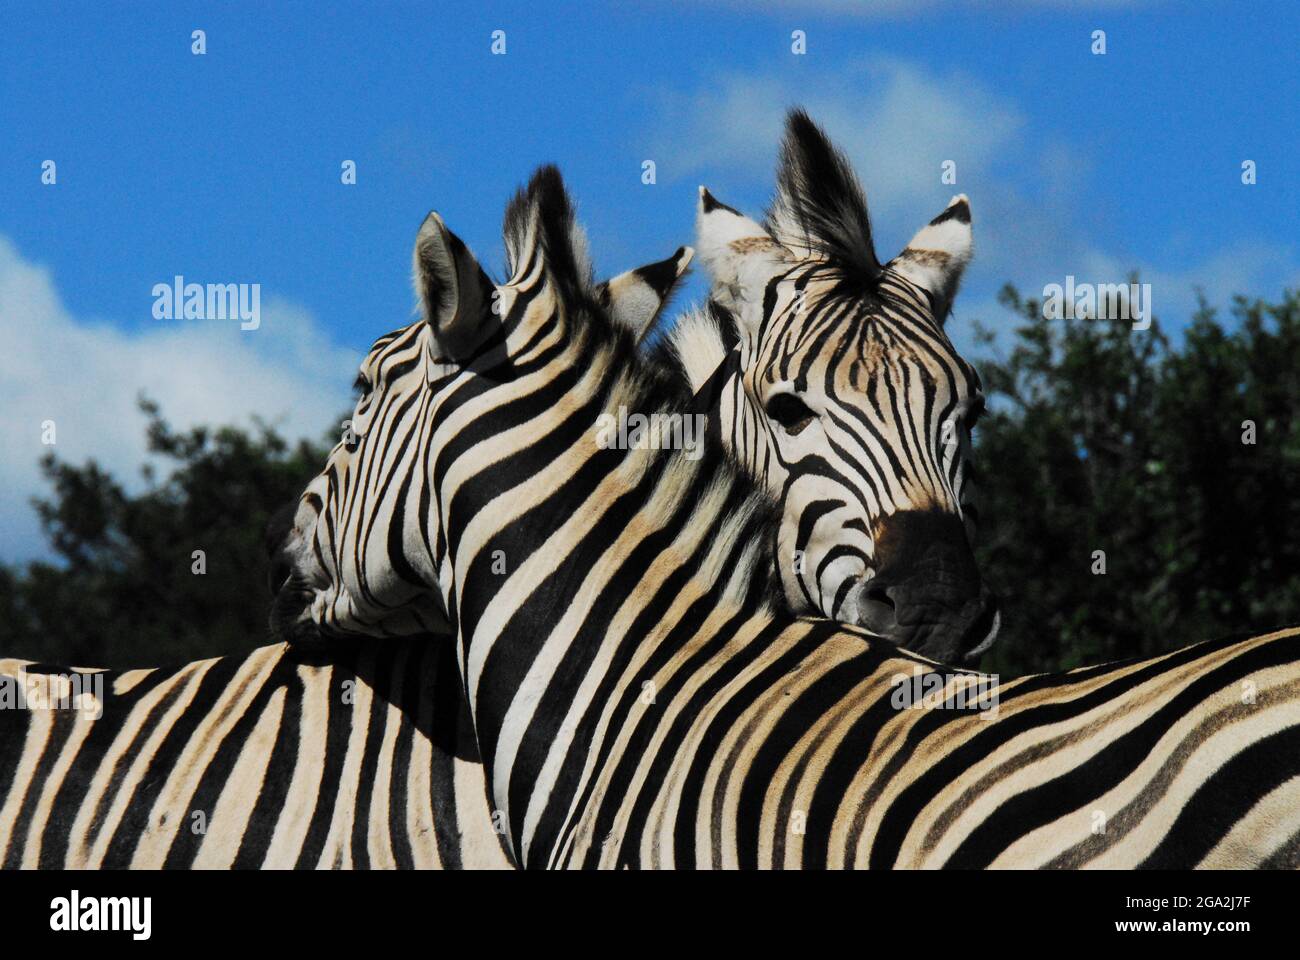 Extreme Nahaufnahme von zwei wunderschönen wilden Zebras Köpfen mit gekreuzten Hälsen in Zuneigung. Aufgenommen während einer Safari in Südafrika. Stockfoto